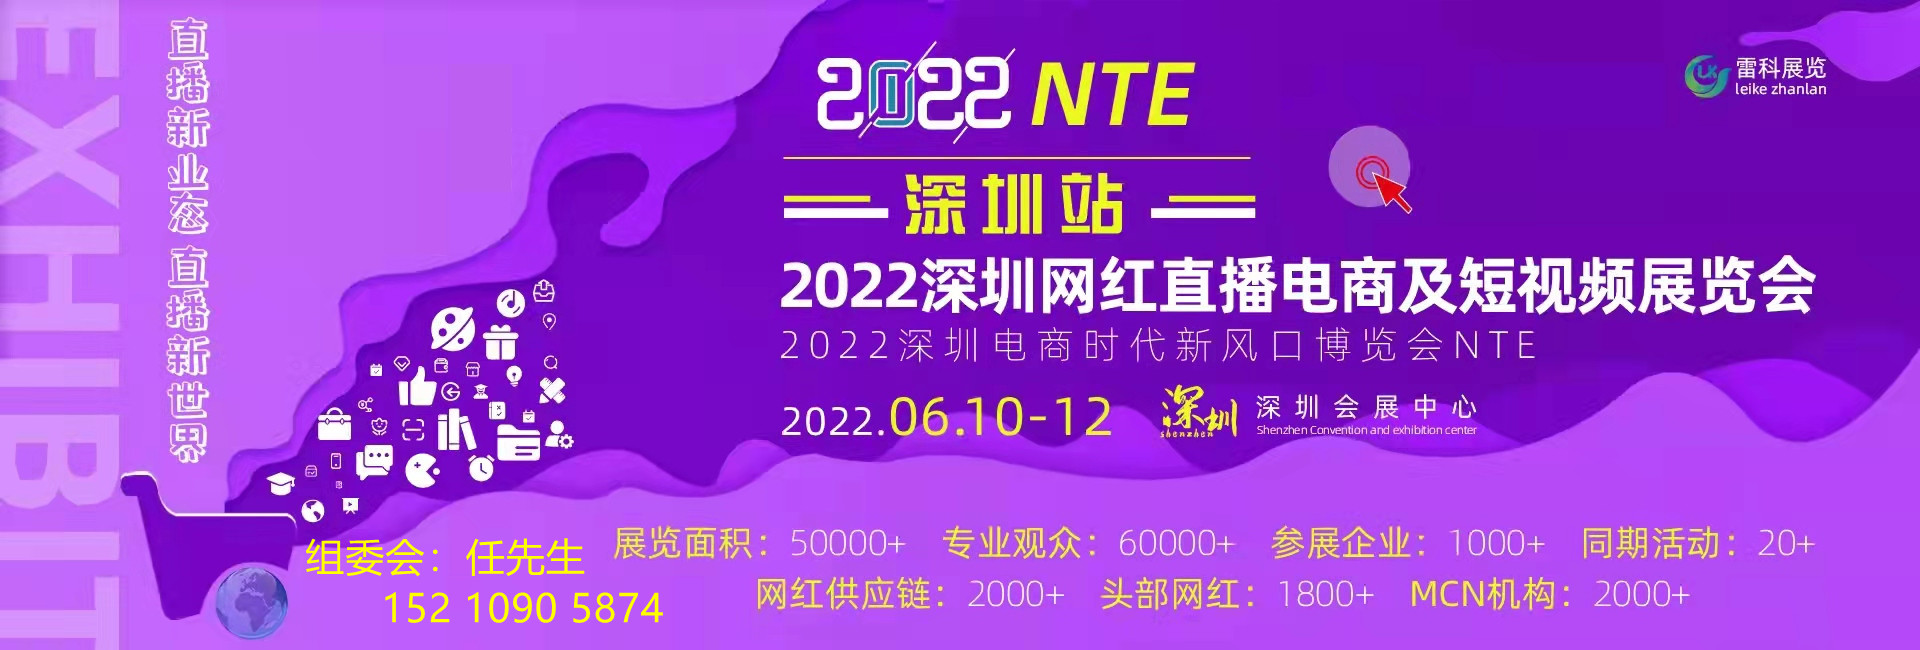 2021深圳电商新渠道展社区团购博览会6月10-12号(www.828i.com)